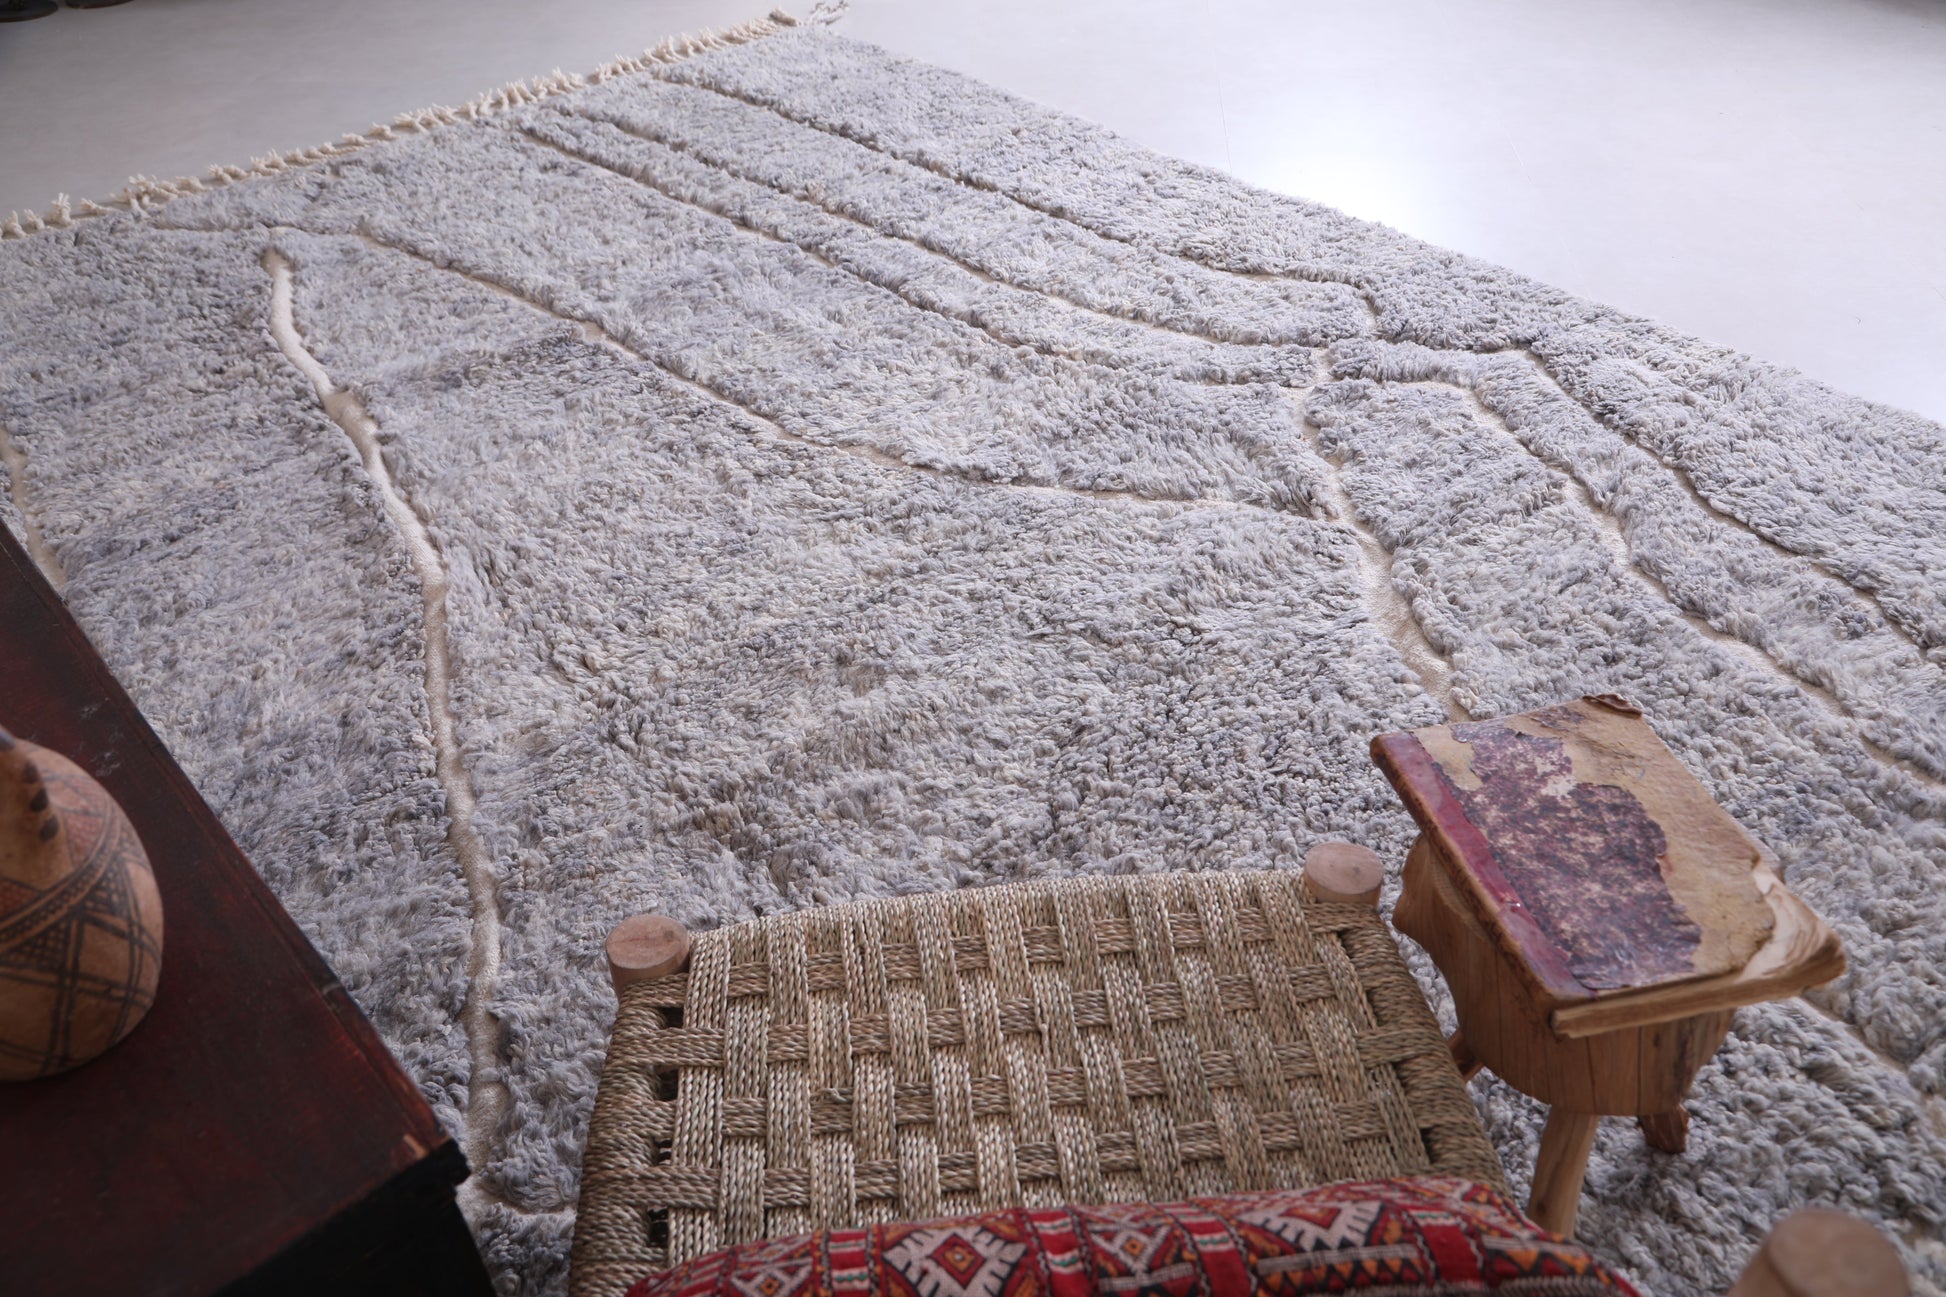 Beni ourain moroccan carpet, Handmade berber rug - Custom Rug